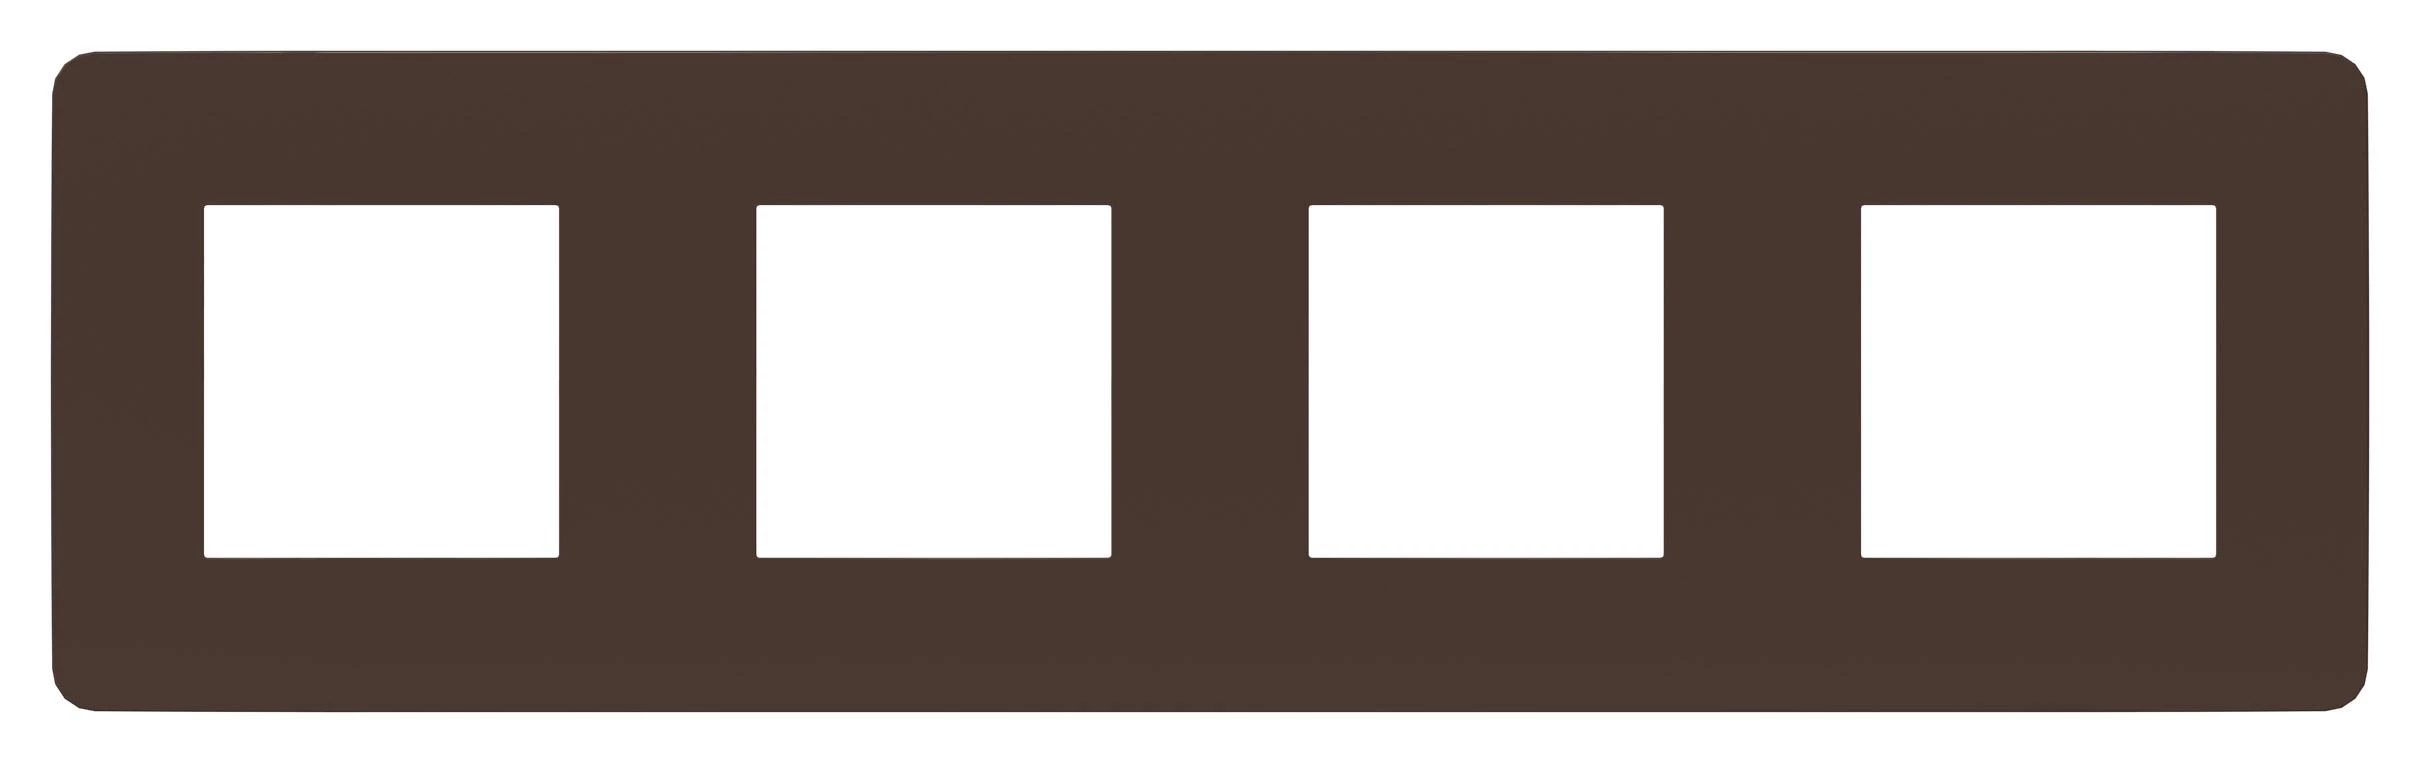  артикул NU280817 название Рамка 4-ая (четверная), Шоколад/Антрацит, серия Unica Studio, Schneider Electric